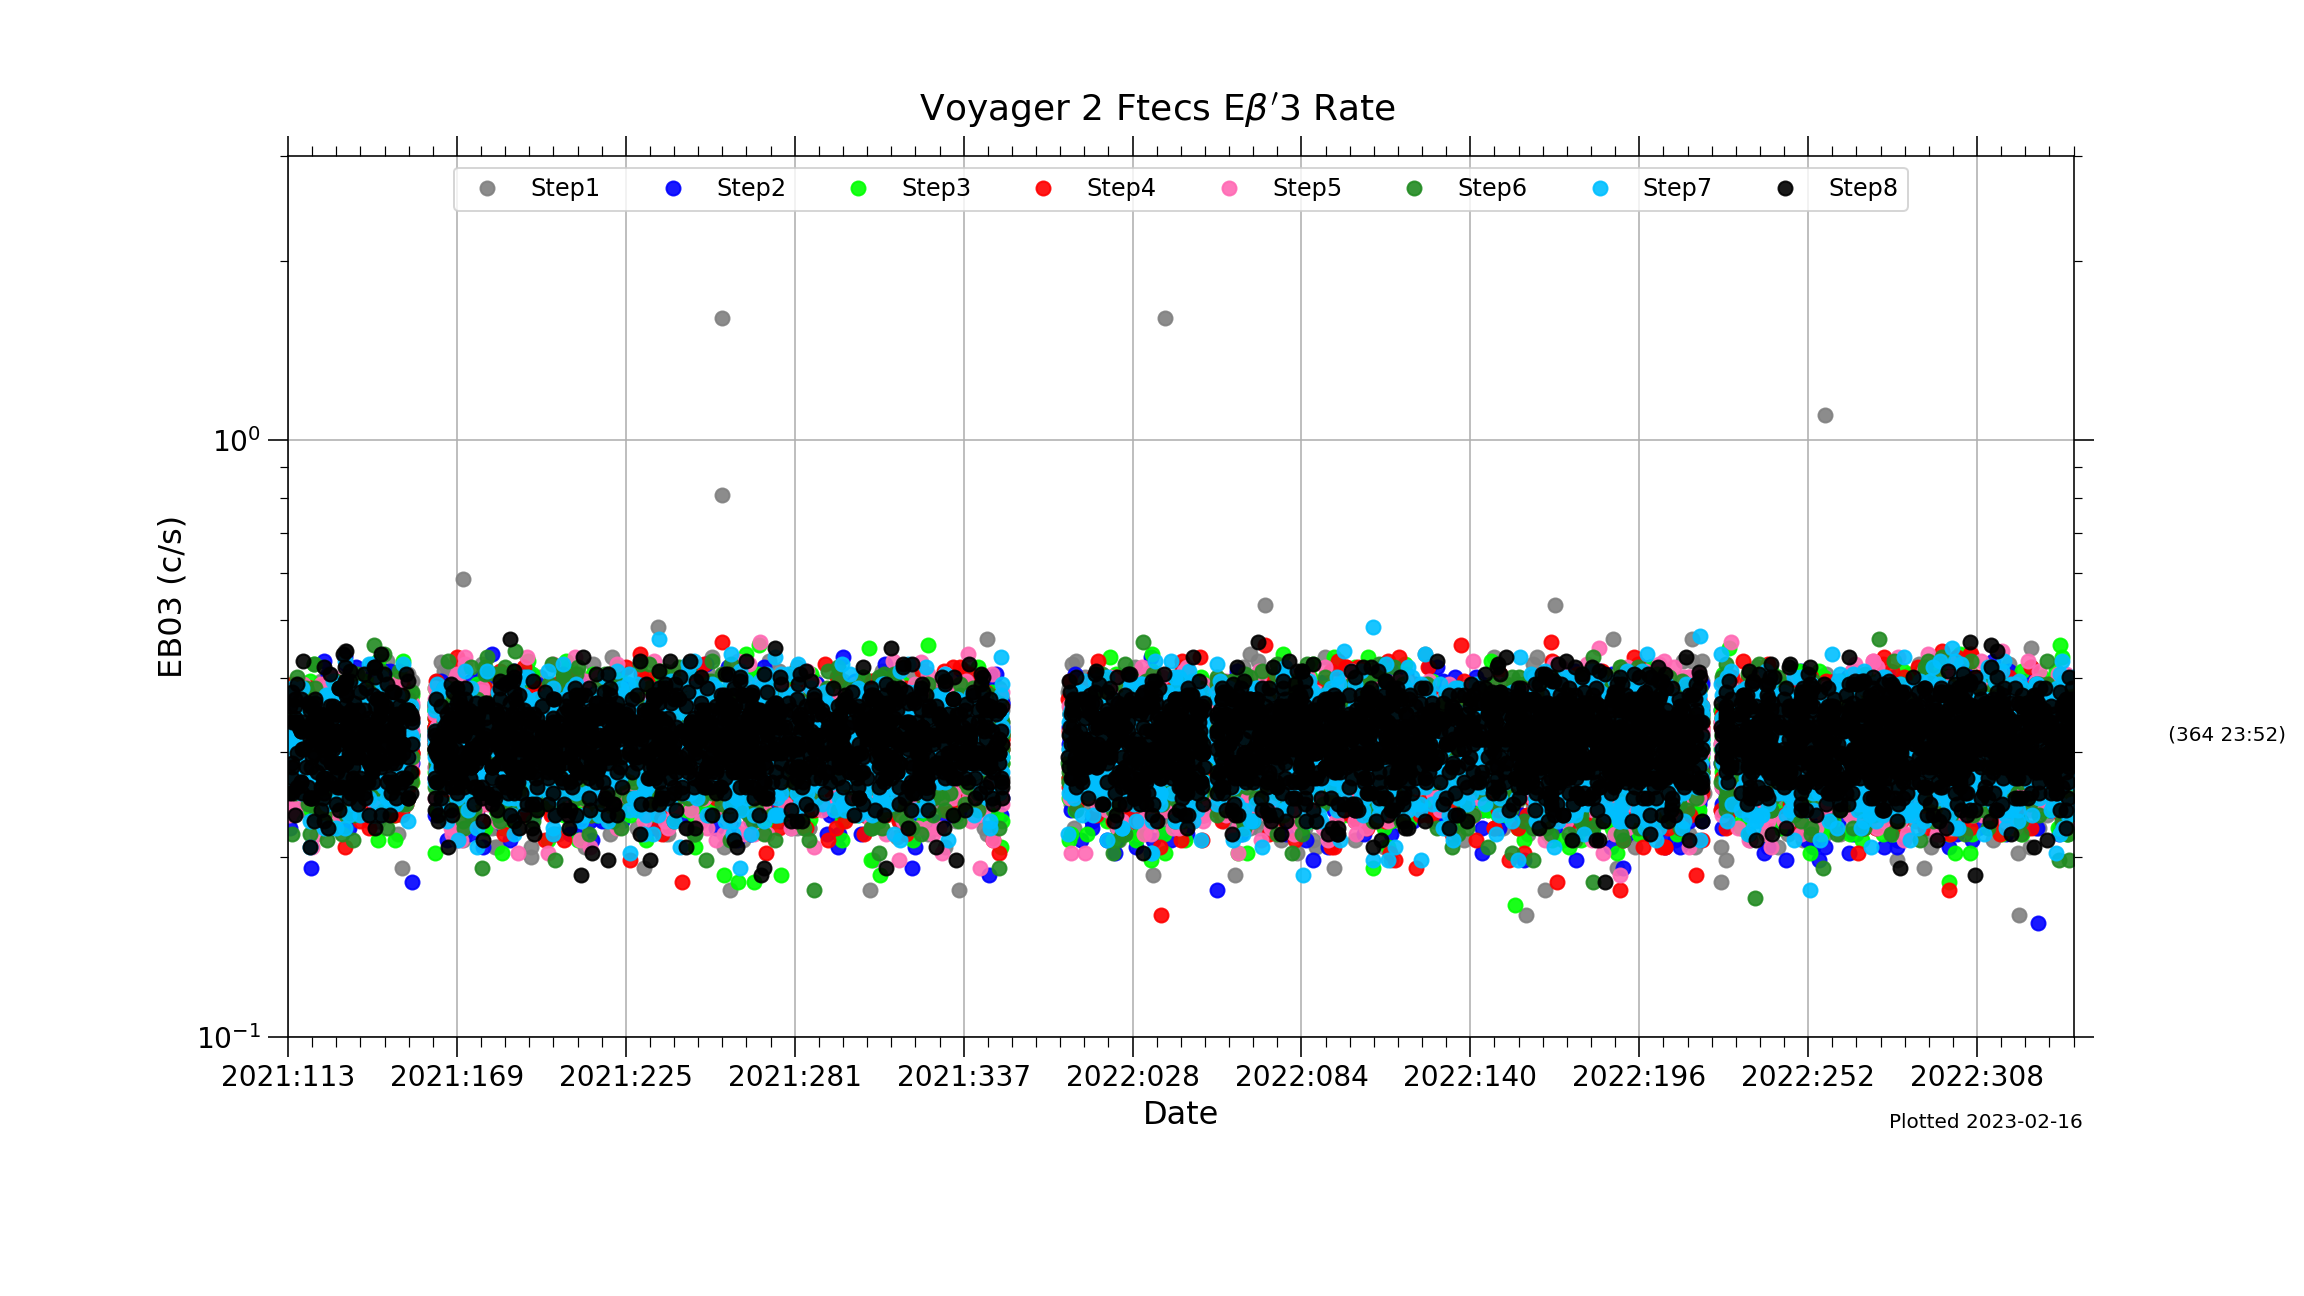 V2_Ftecs_EBP3_Rate_2021-22